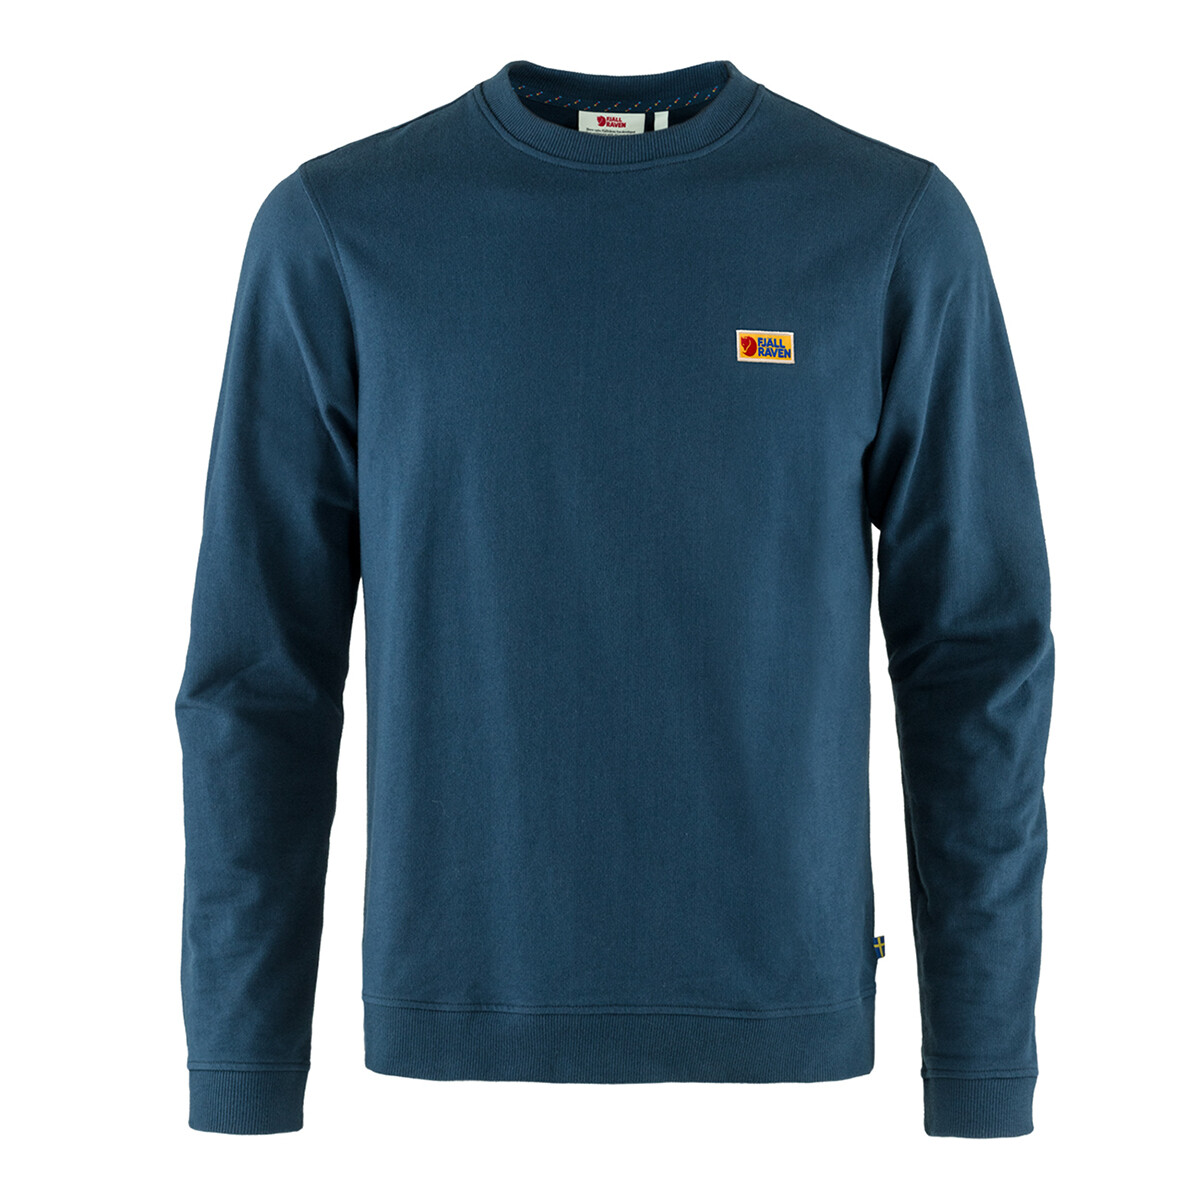 Vardag Sweater M / Vardag Sweater M - Azul 